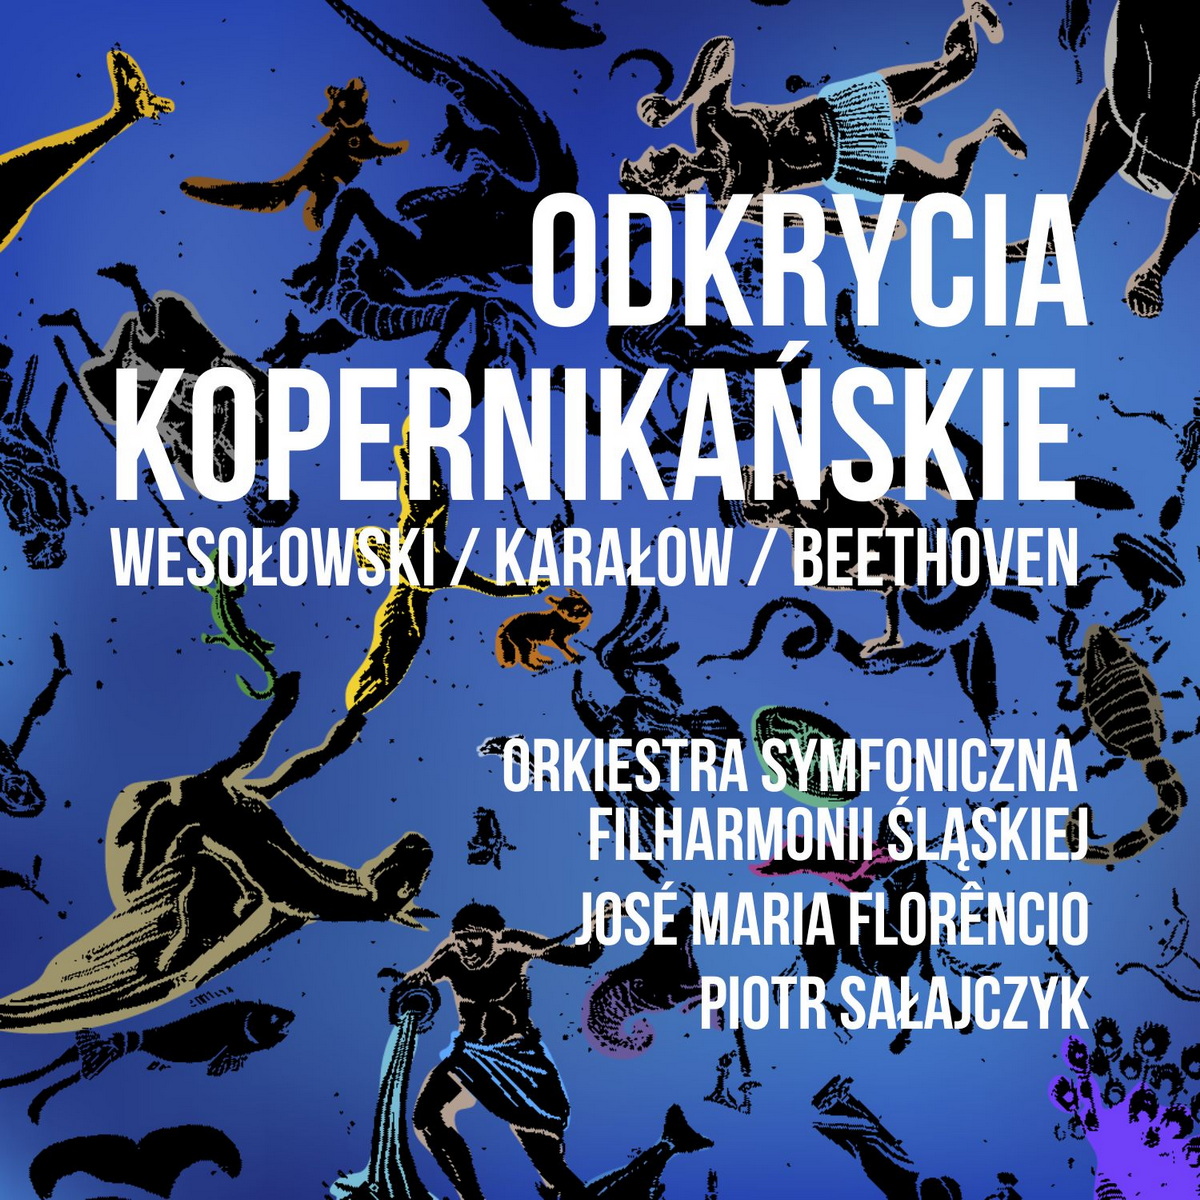 Wesołowski, Karałow, Beethoven „Odkrycia Kopernikańskie”. Premiera